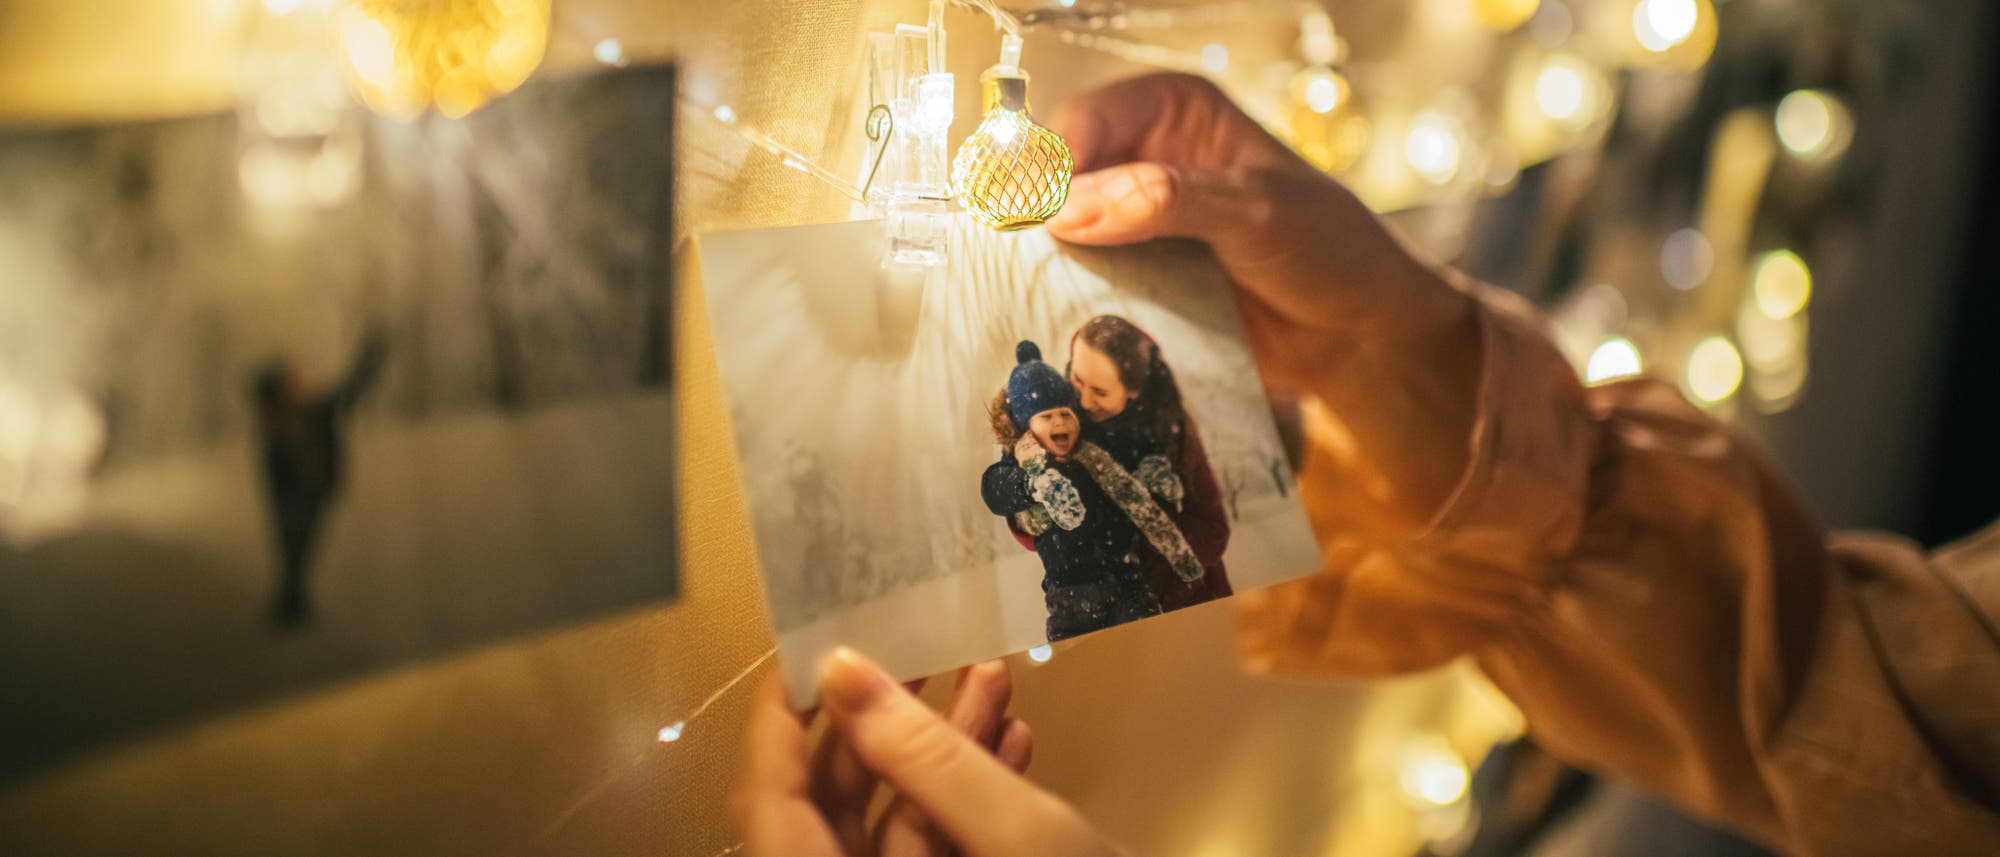 Familienfoto hängt an einer Lichterkette. Zwei Hände greifen danach.